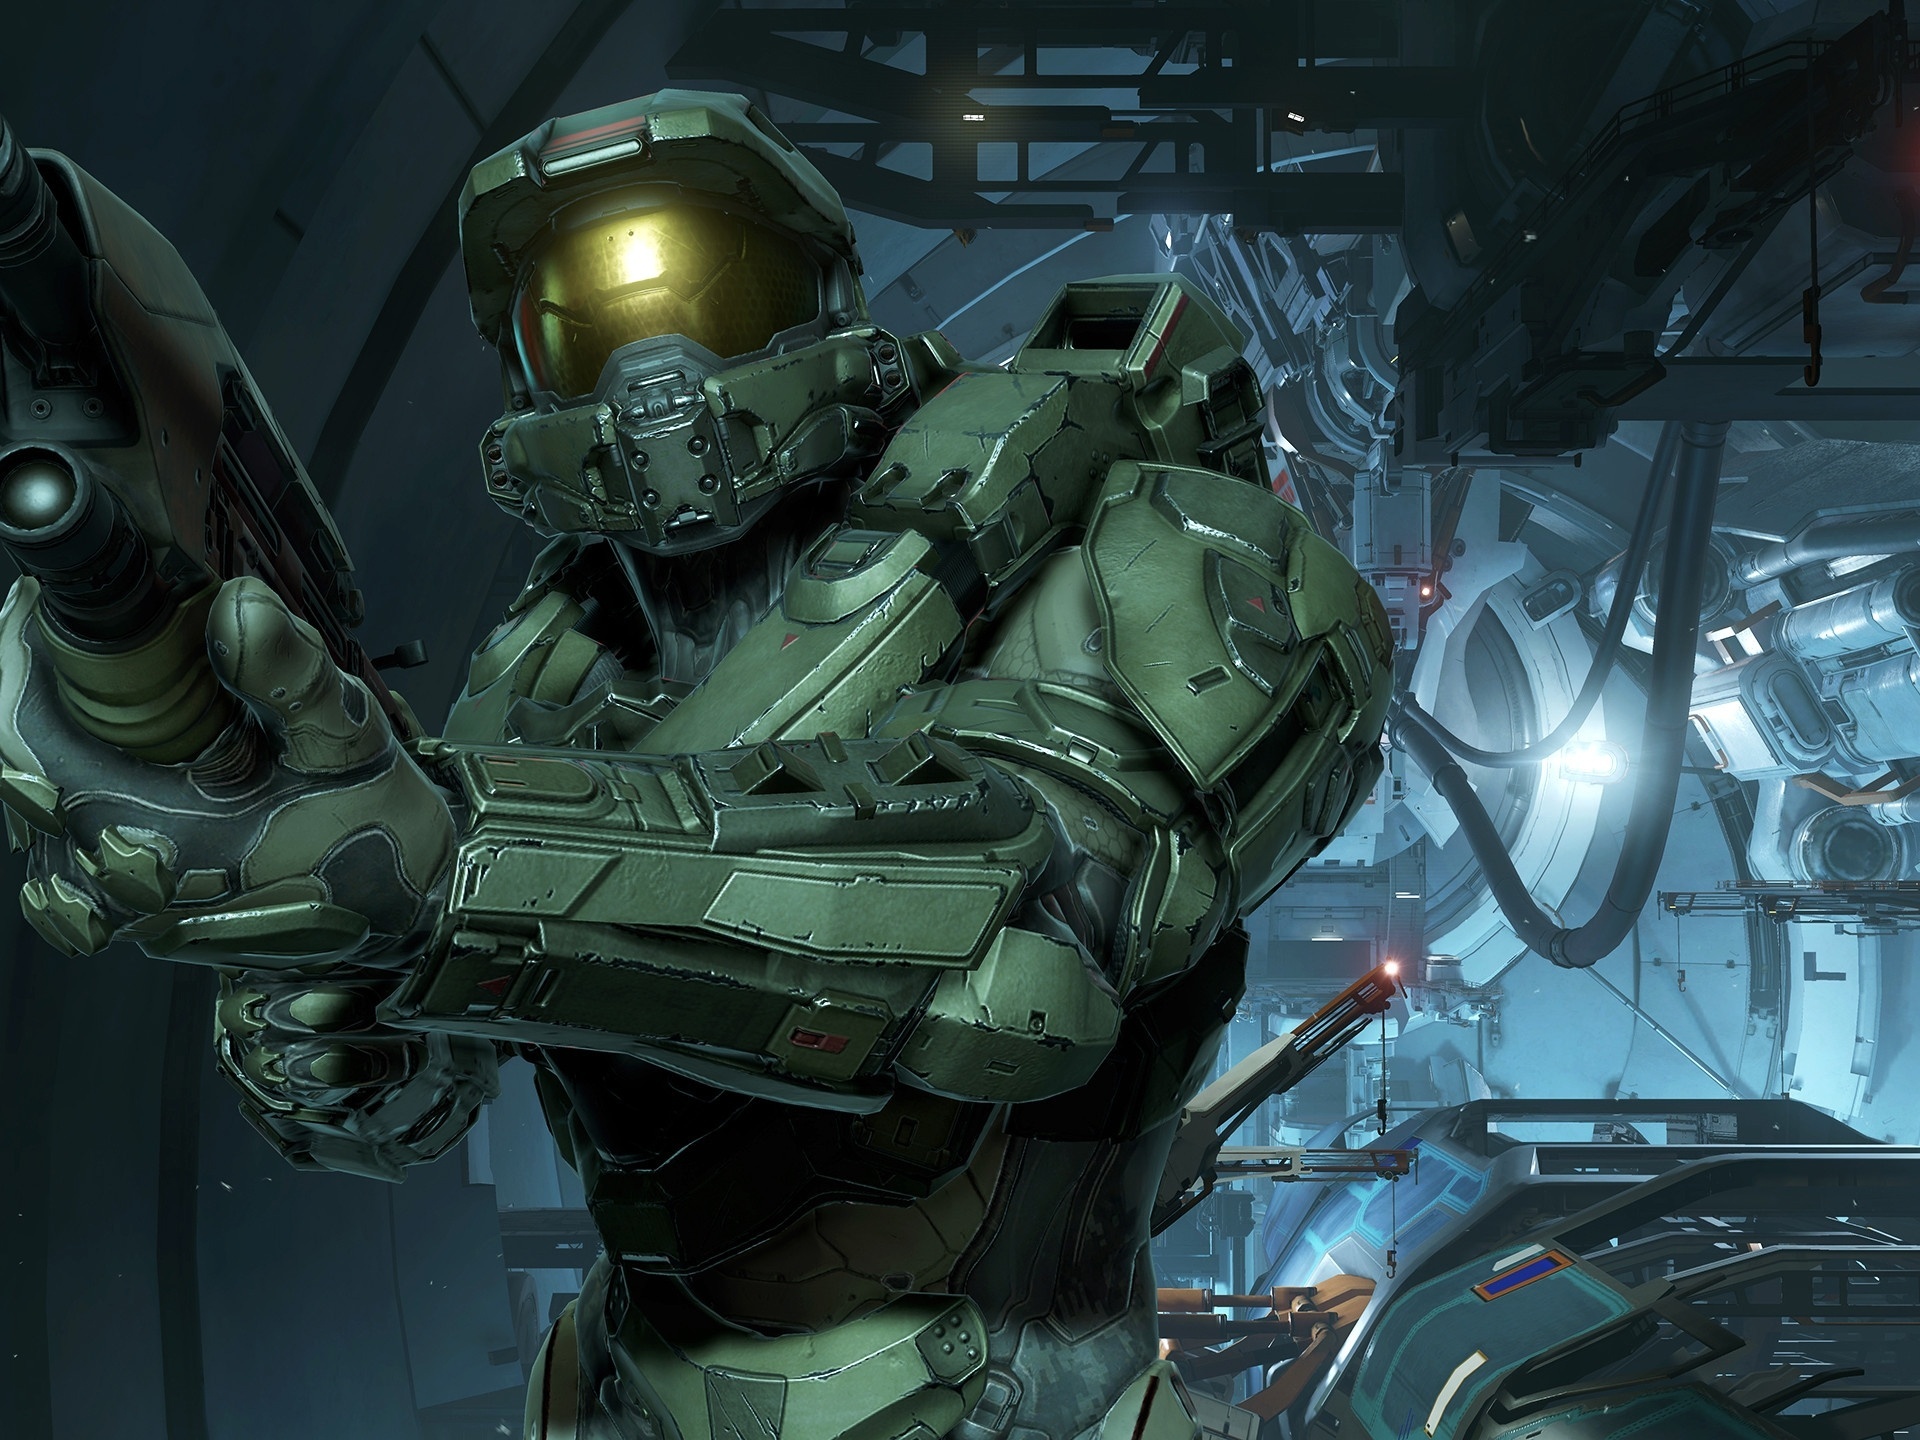 Halo: confira calendário de lançamento dos próximos episódios